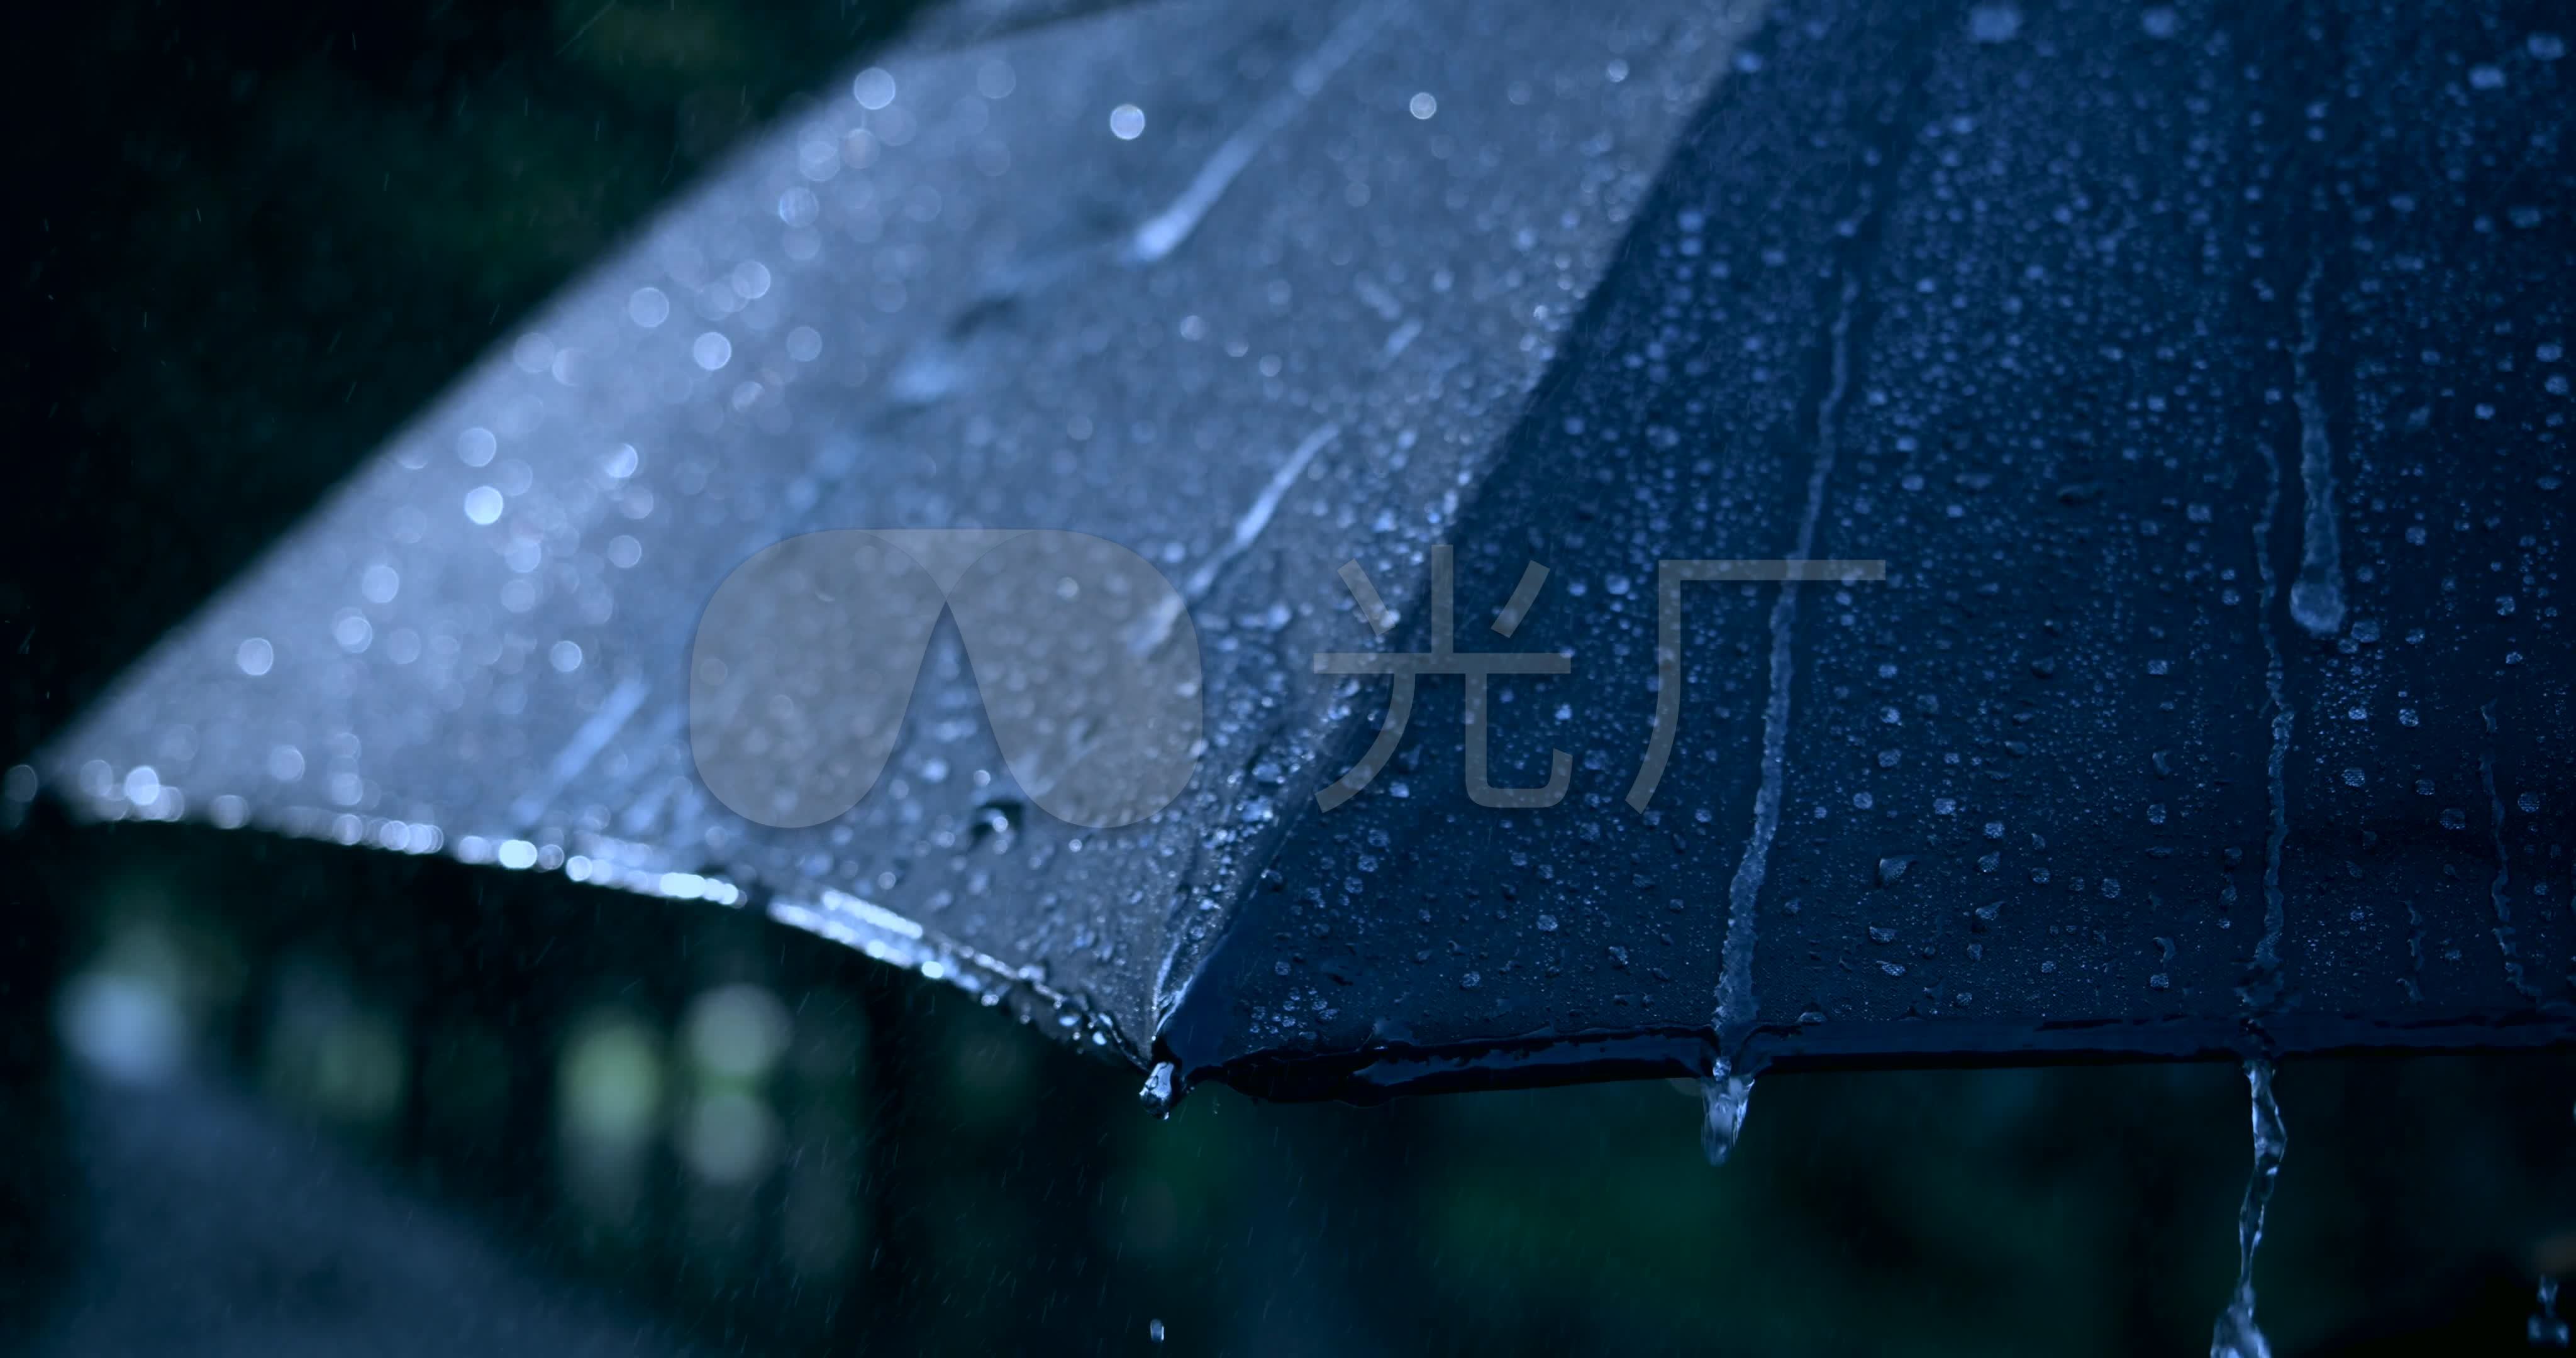 上海下雨天街道打伞的老人高清摄影大图-千库网